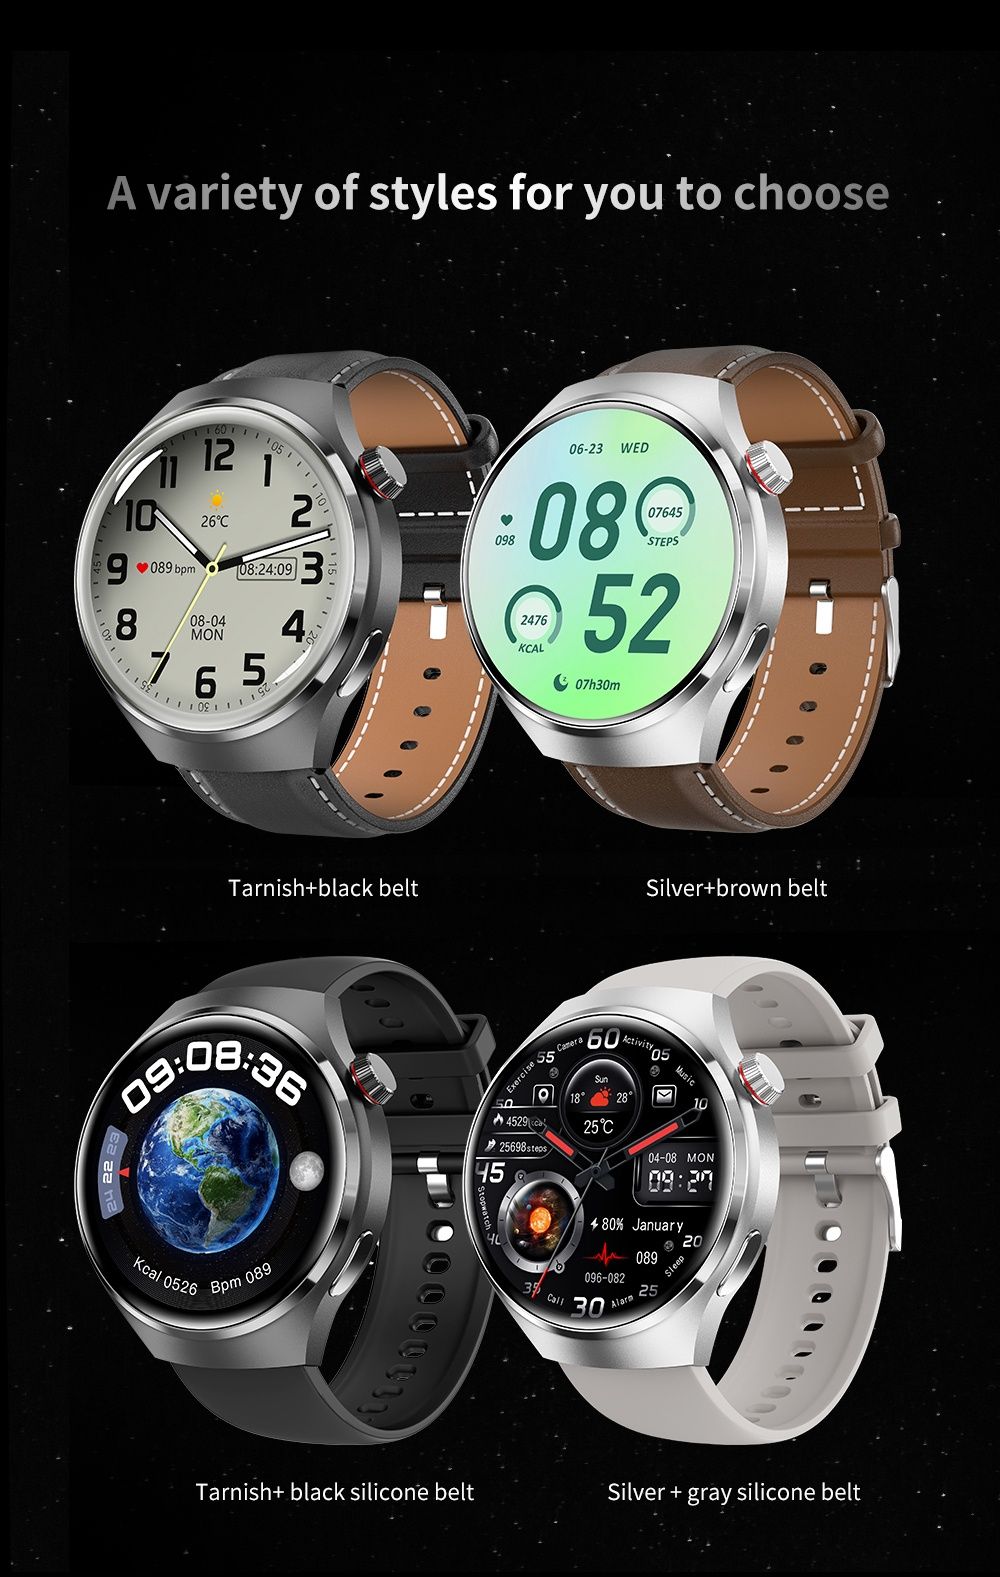 Smartwatch Watch 4 Pro Rozmowy, EKG,Puls,Glikemia